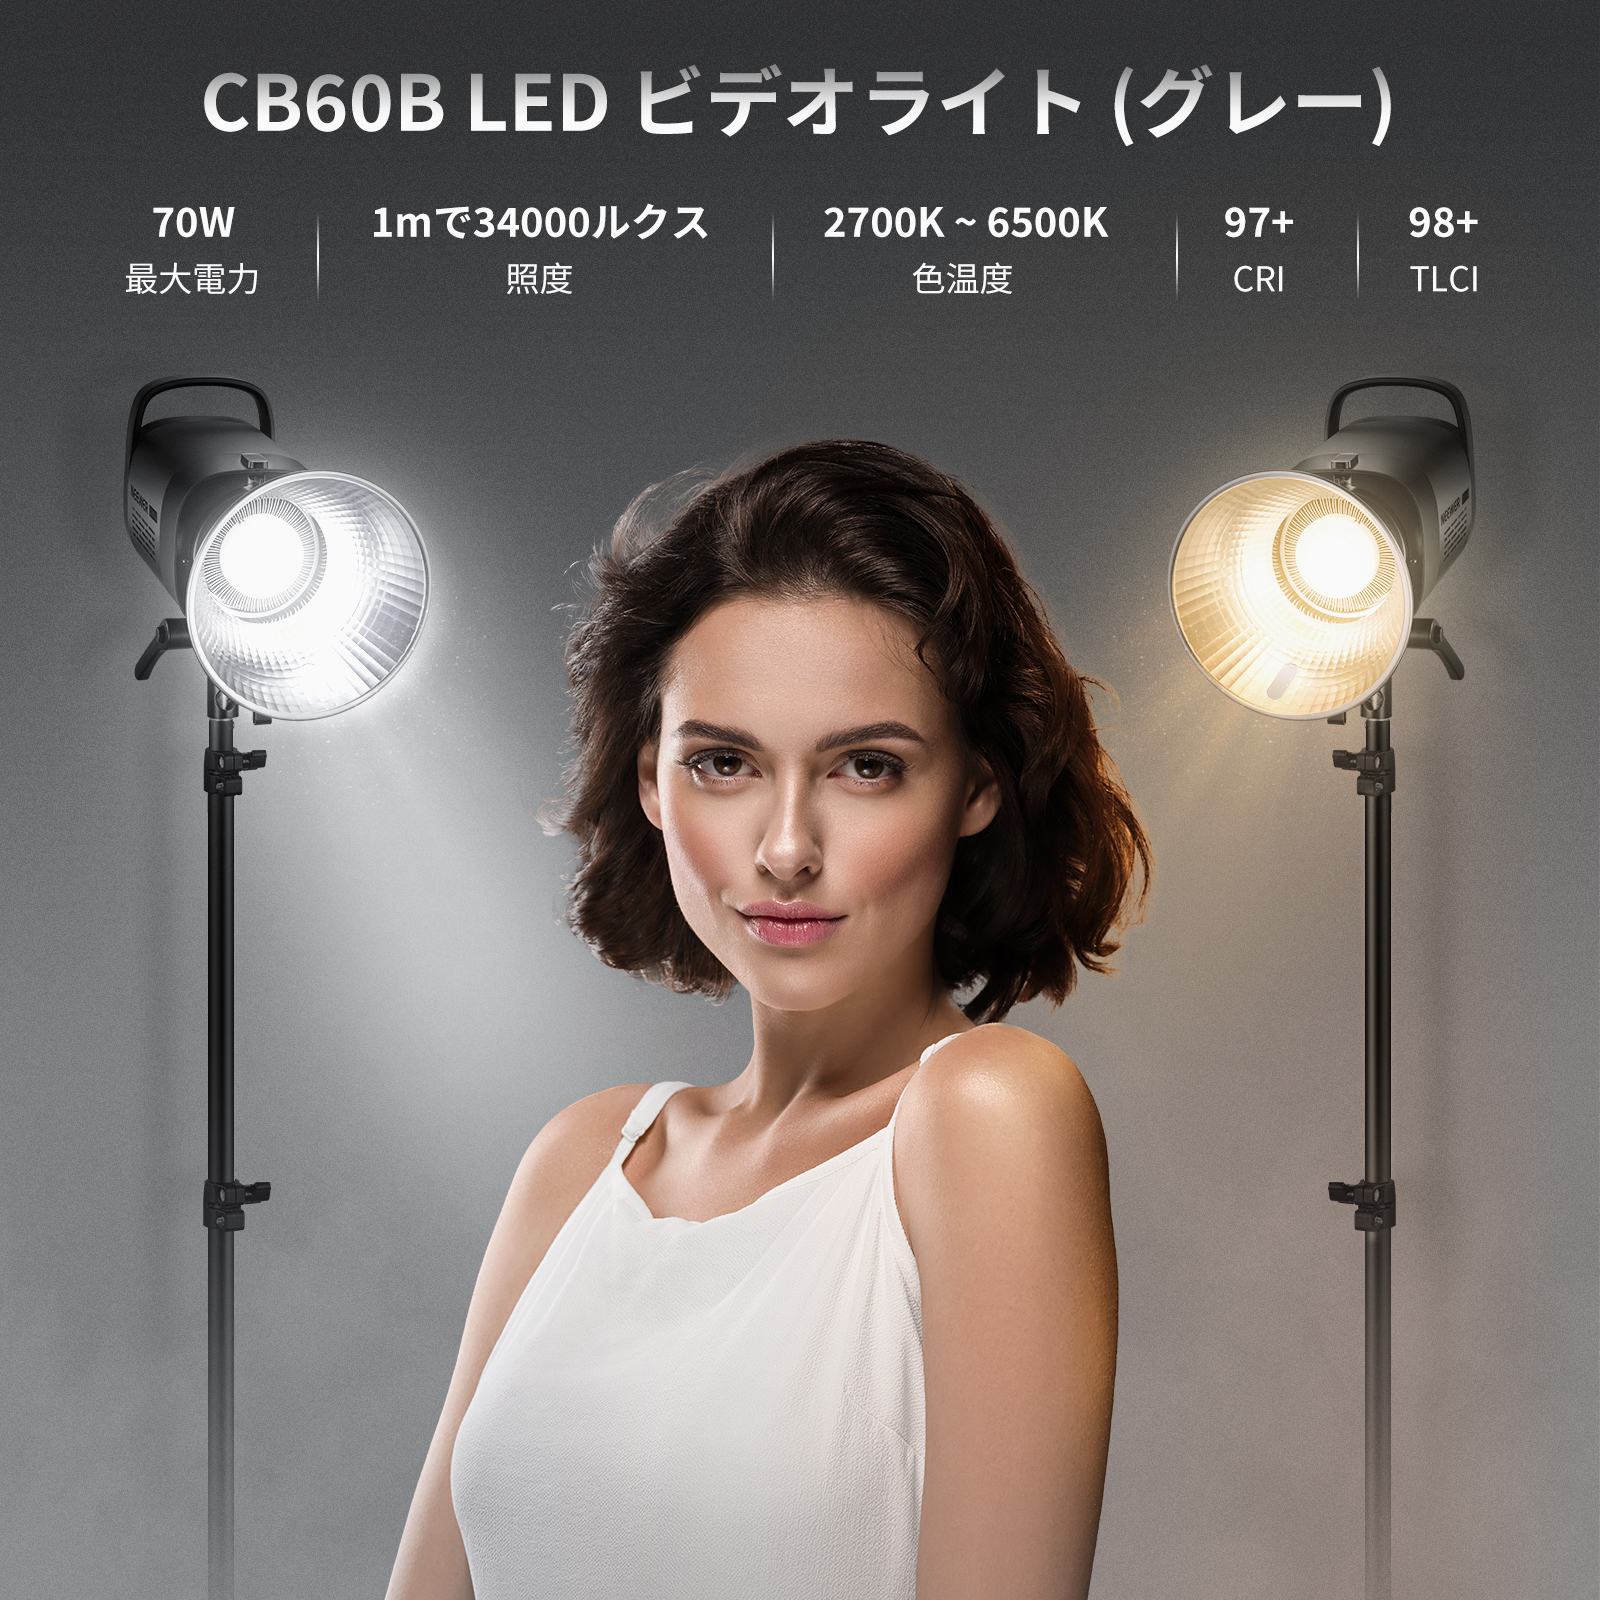 NEEWER CB60B 70W LEDビデオライト-